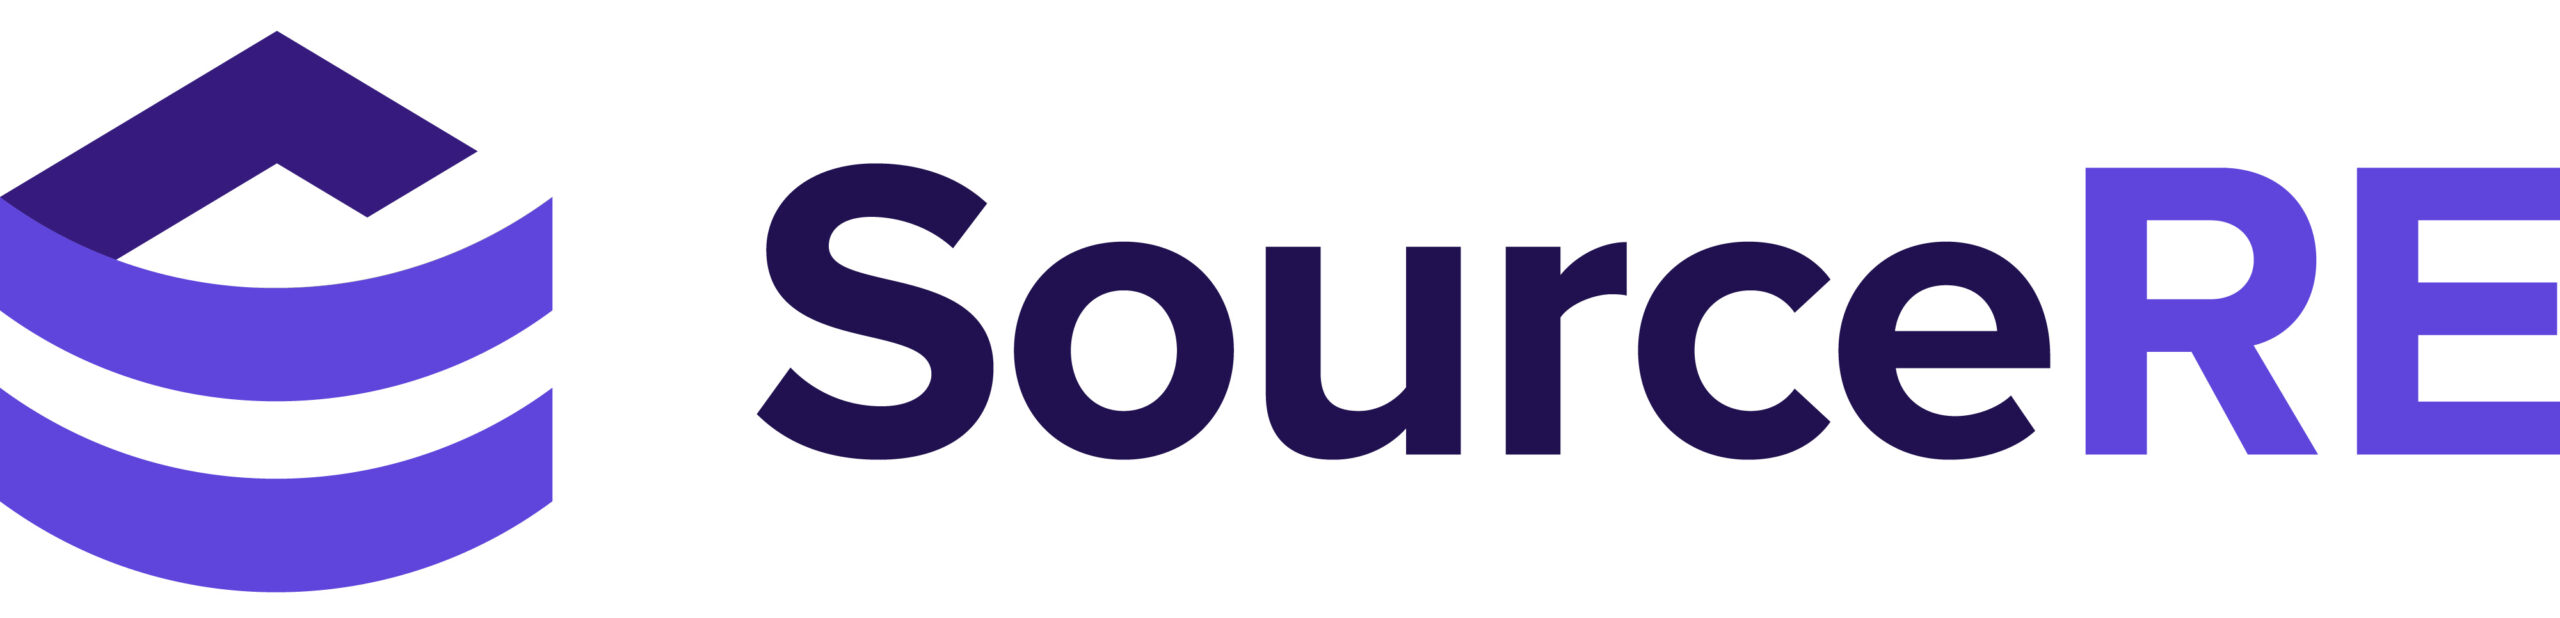 SourceRE logo